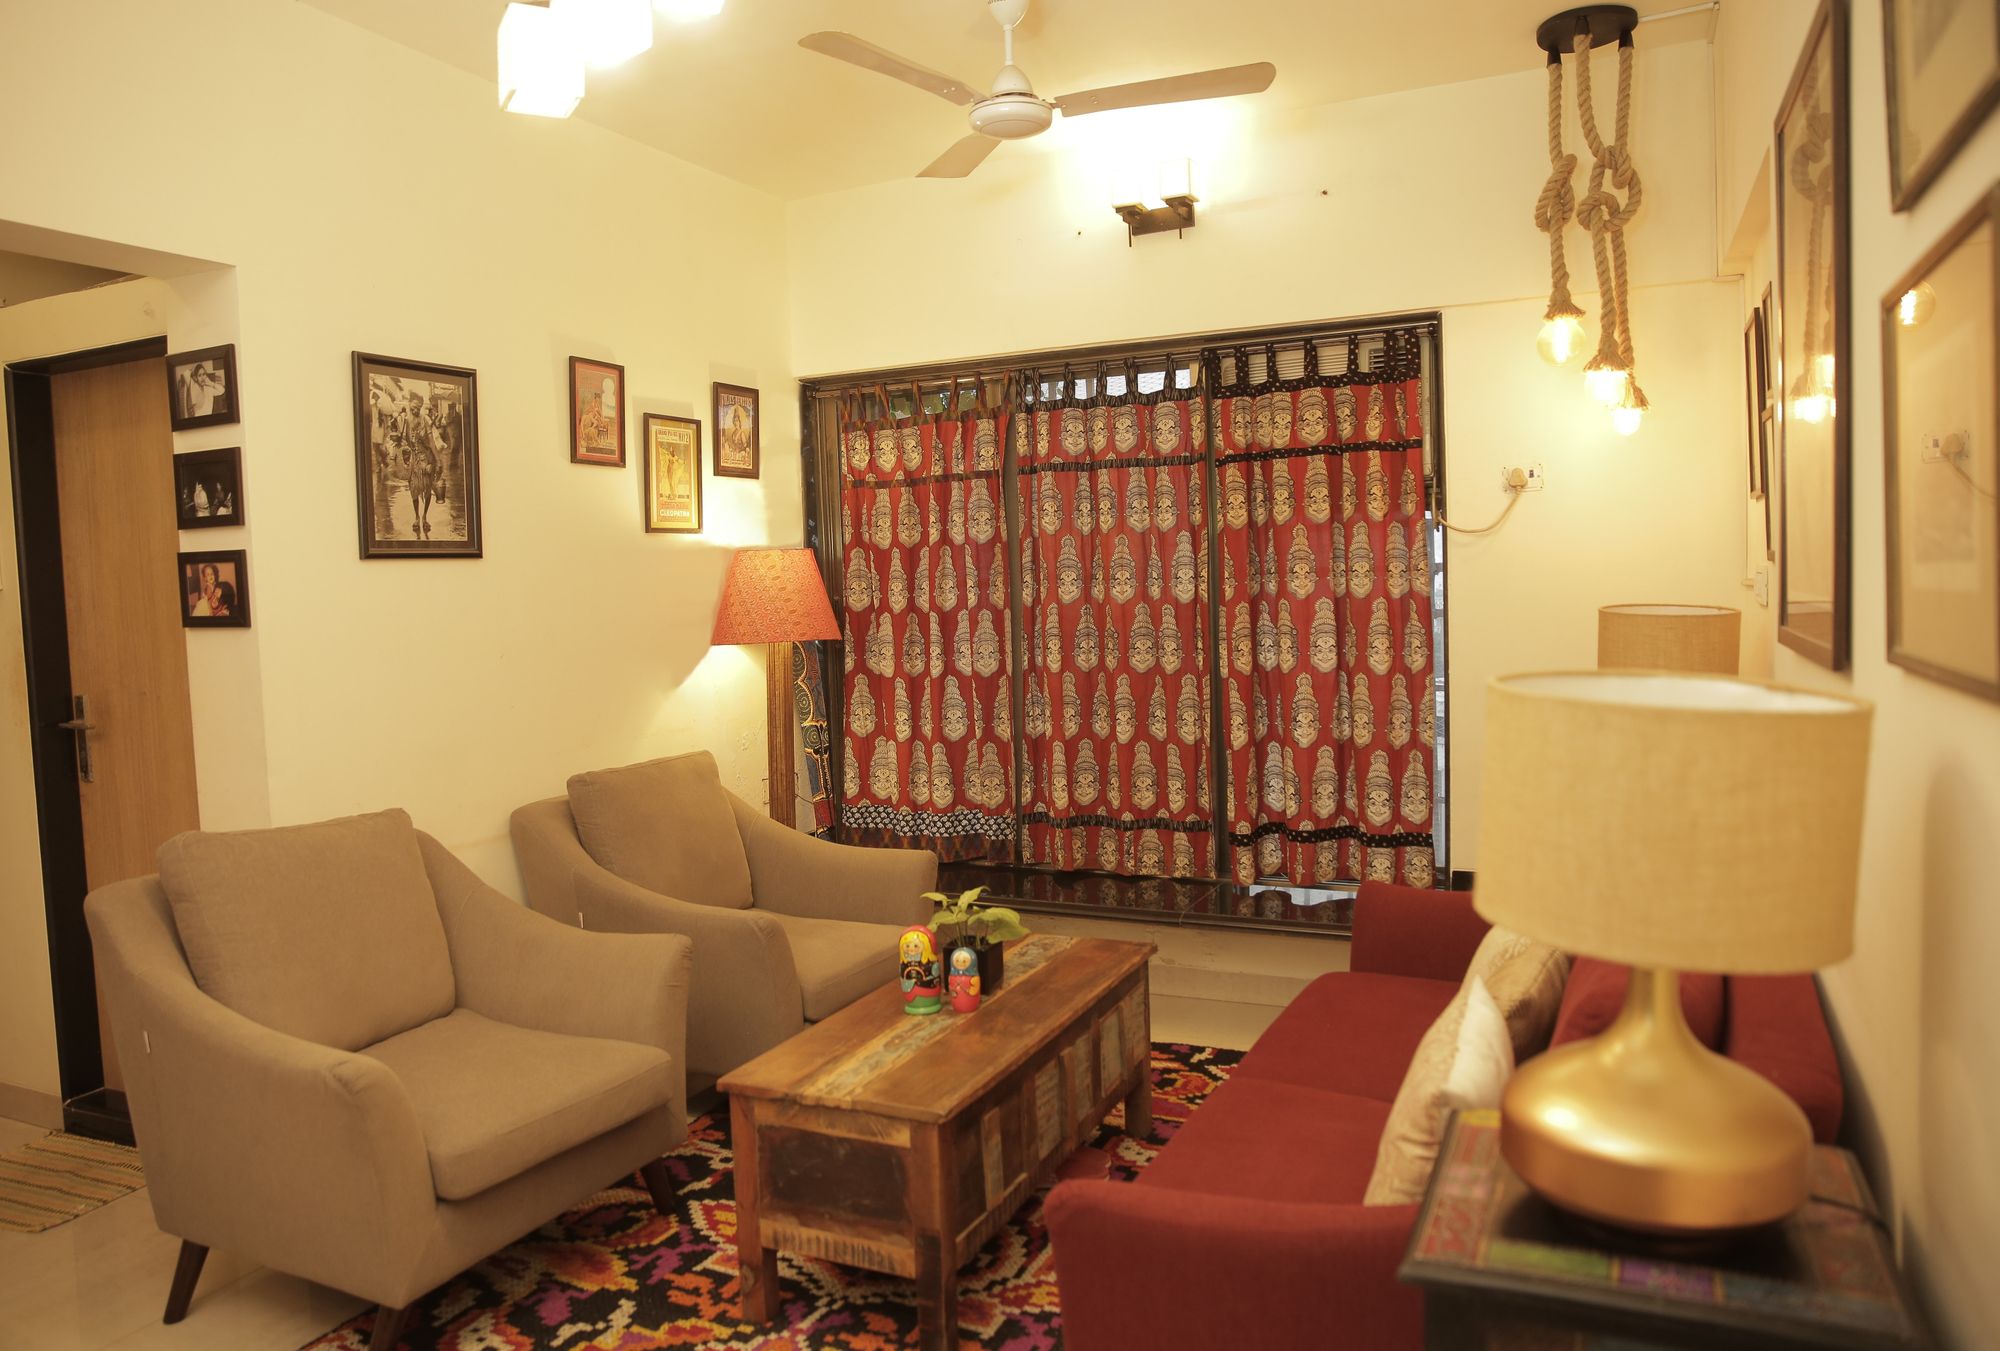 Swara Bhaskar's Home